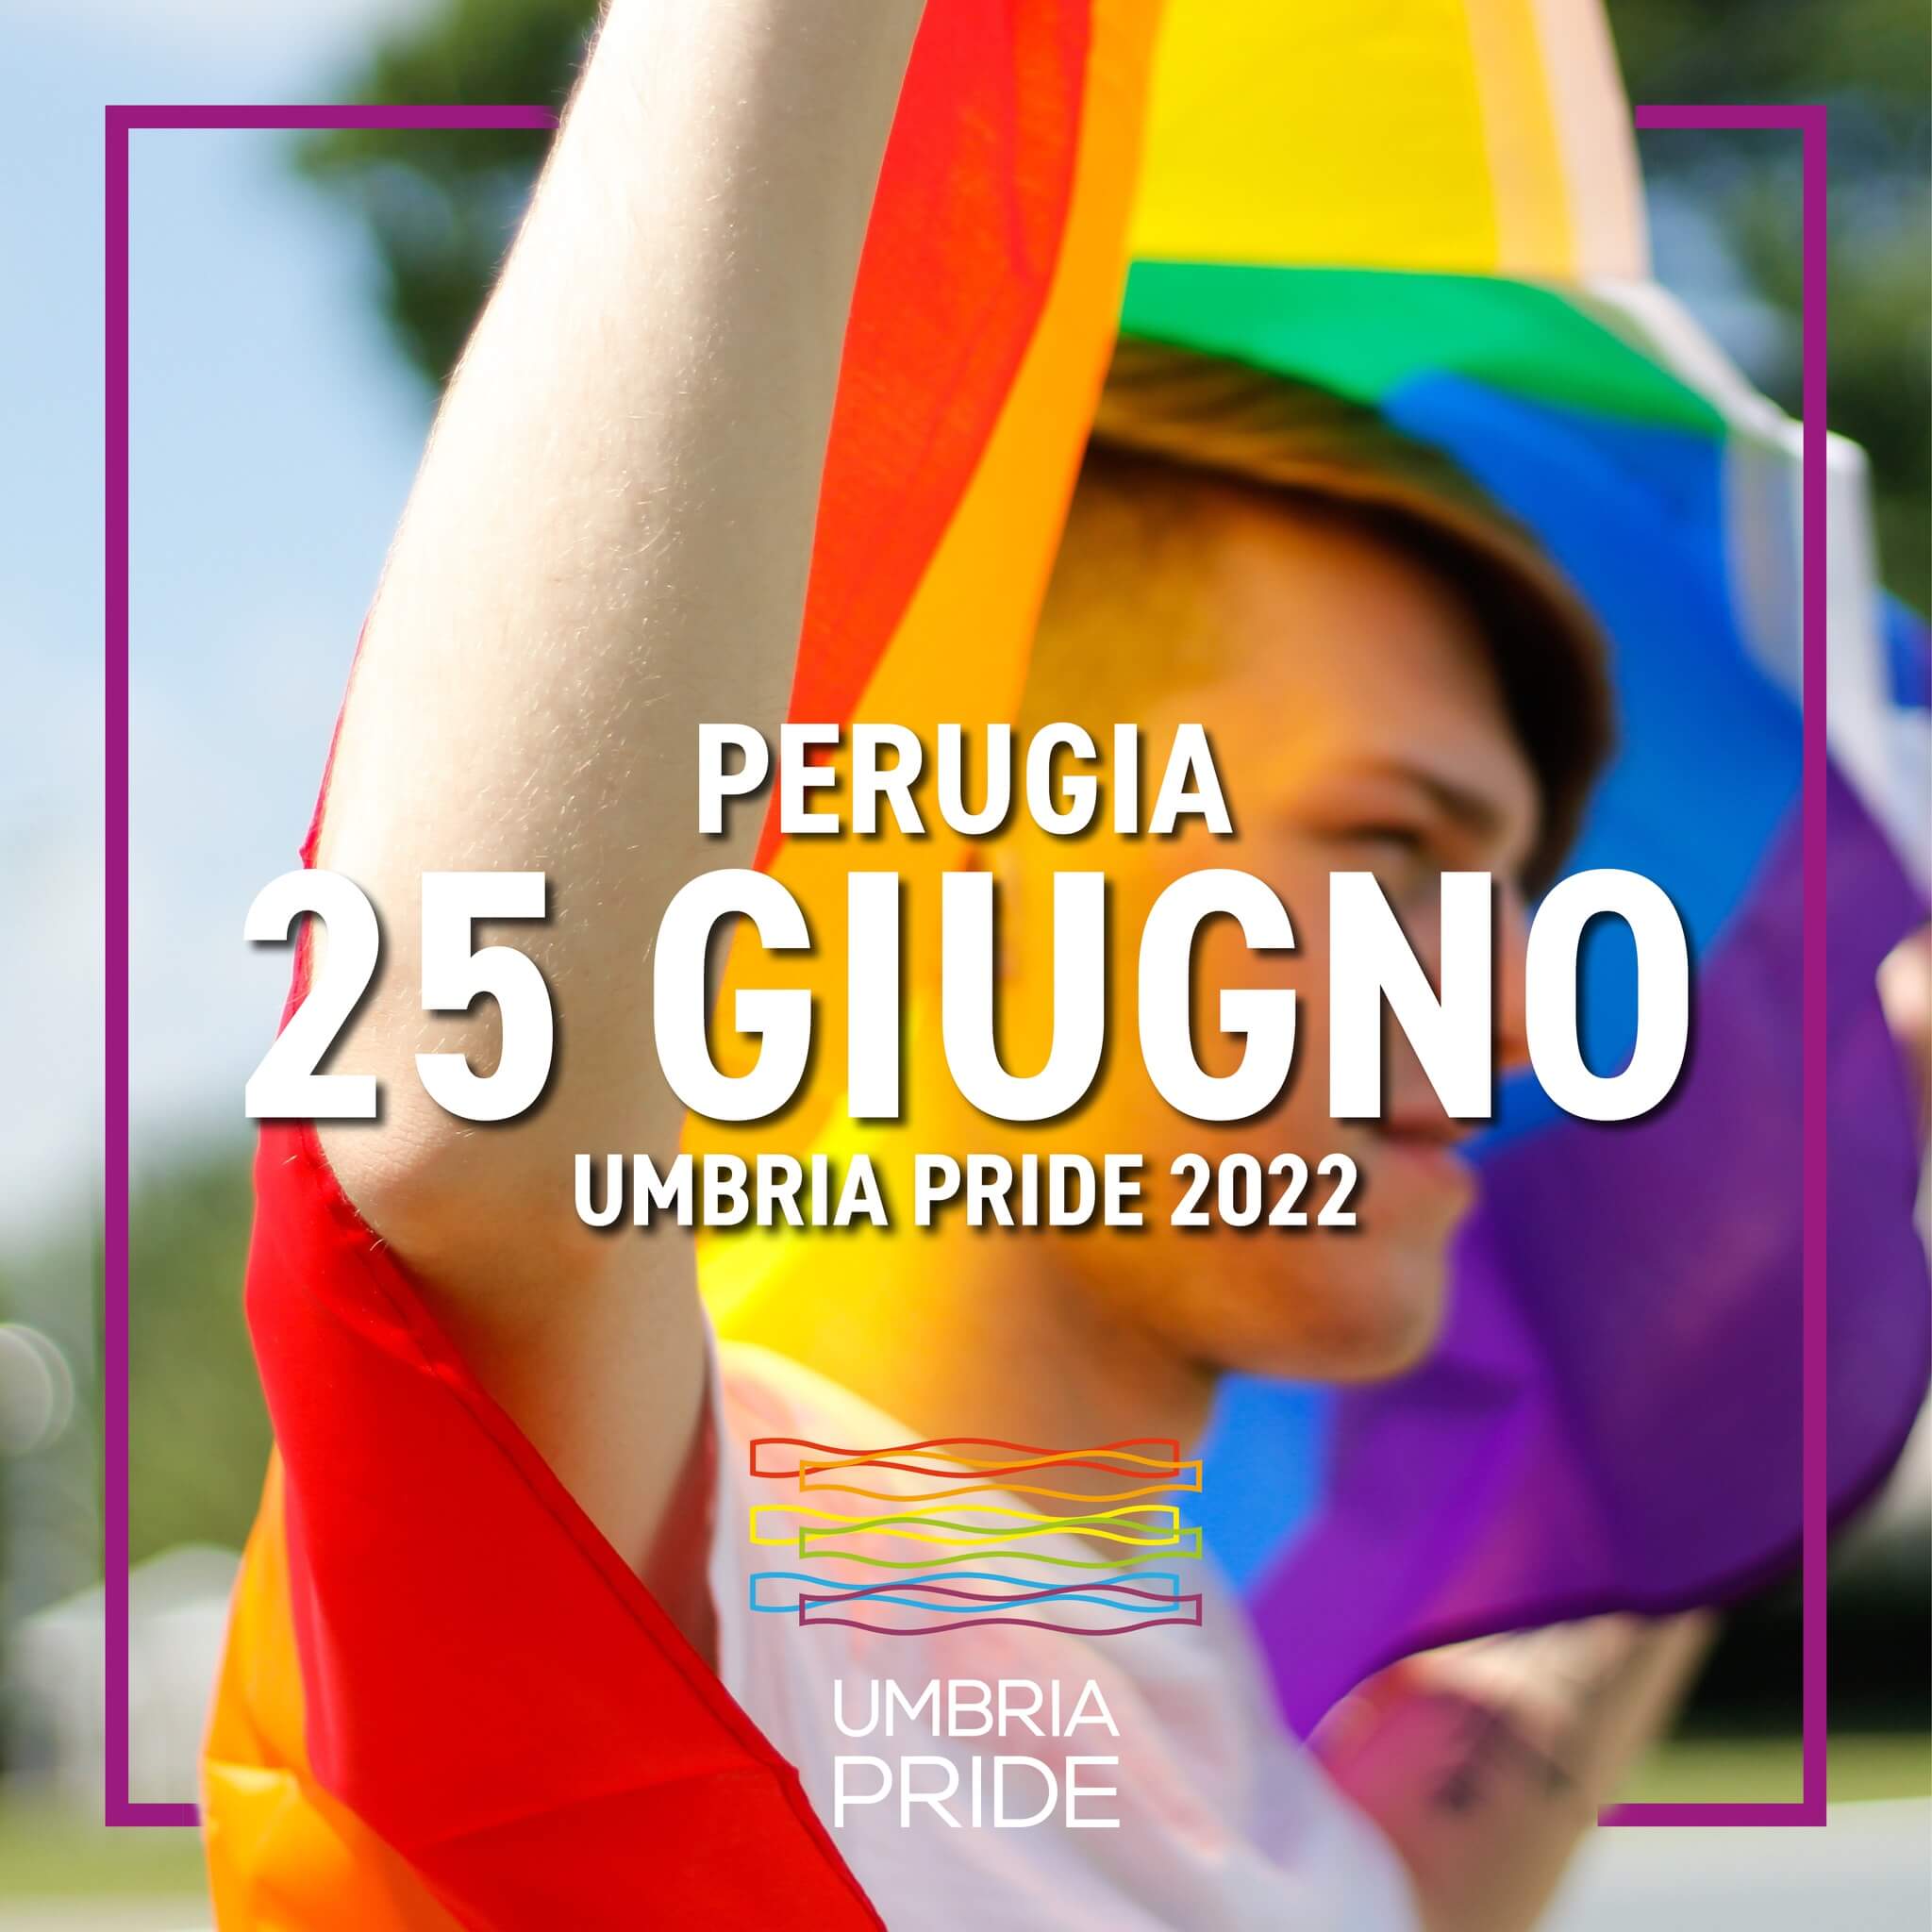 Umbria Pride 2022, la prima edizione a Perugia il 25 giugno - Perugia Pride 2022 - Gay.it